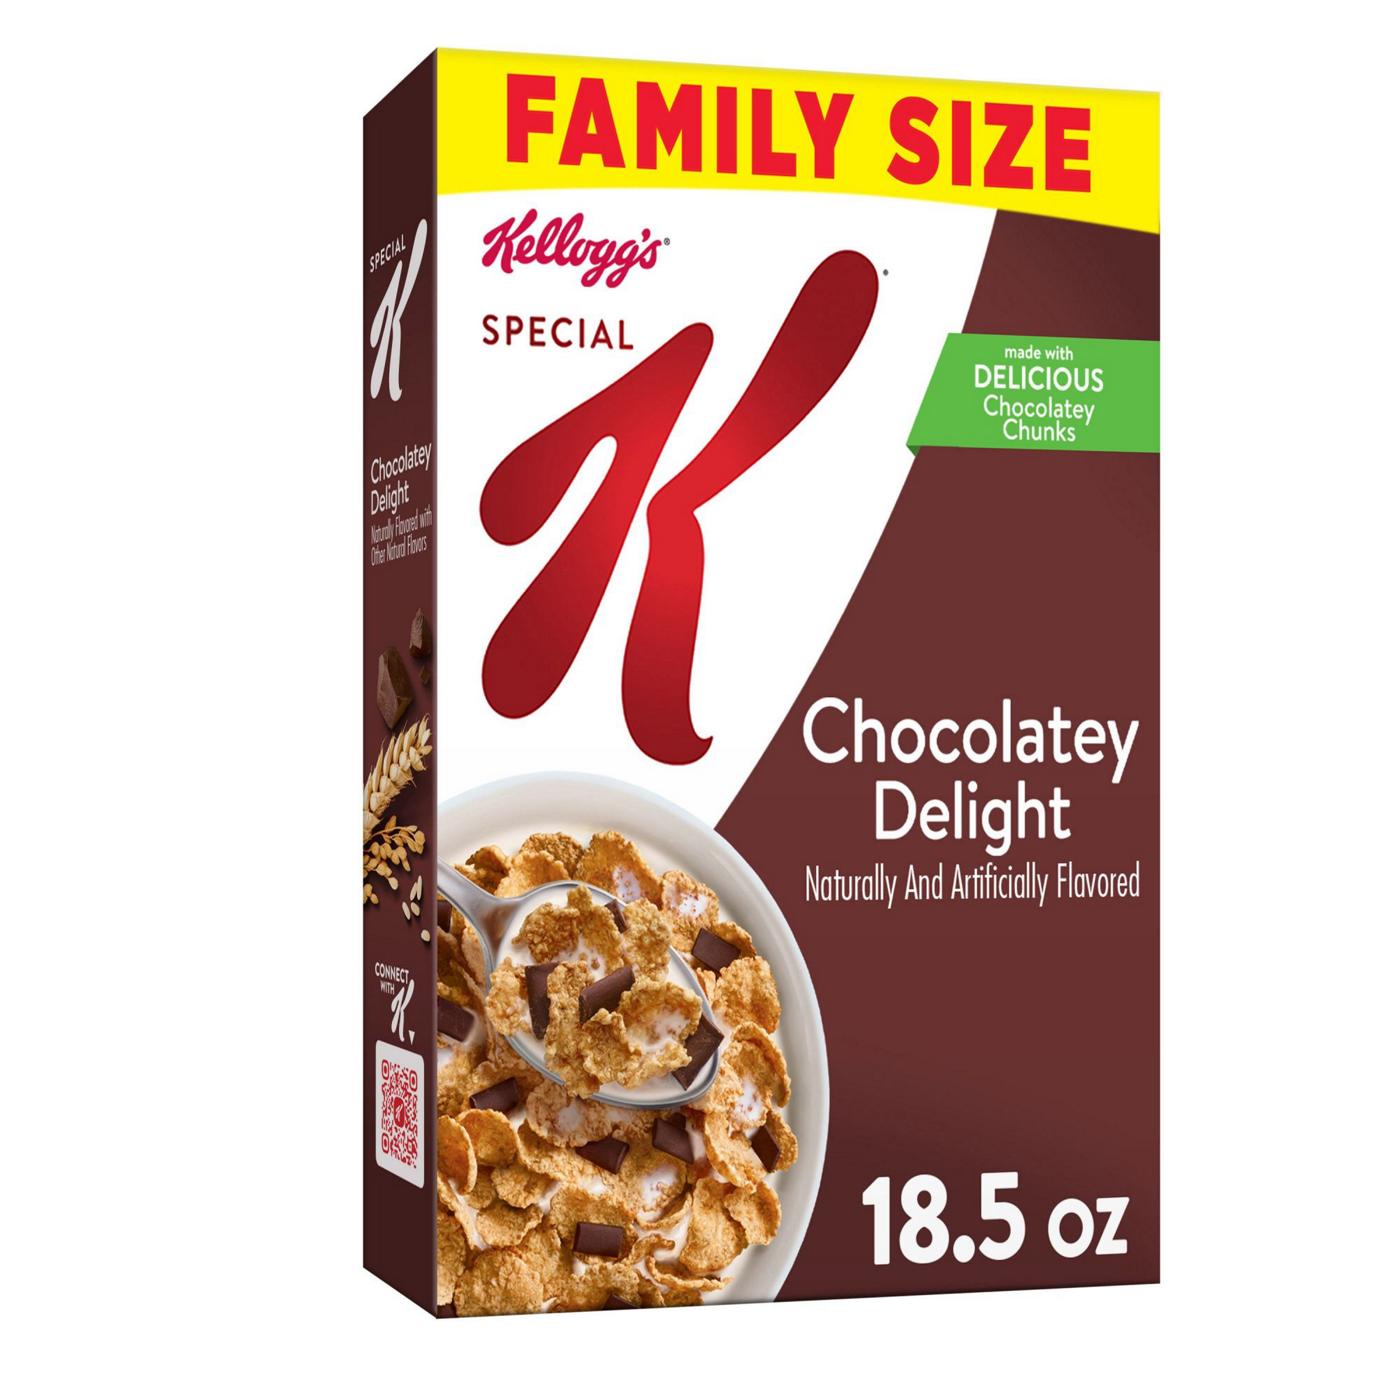 Kellogg's Special K Original Multi-Grain Touch of Cinnamon Cold